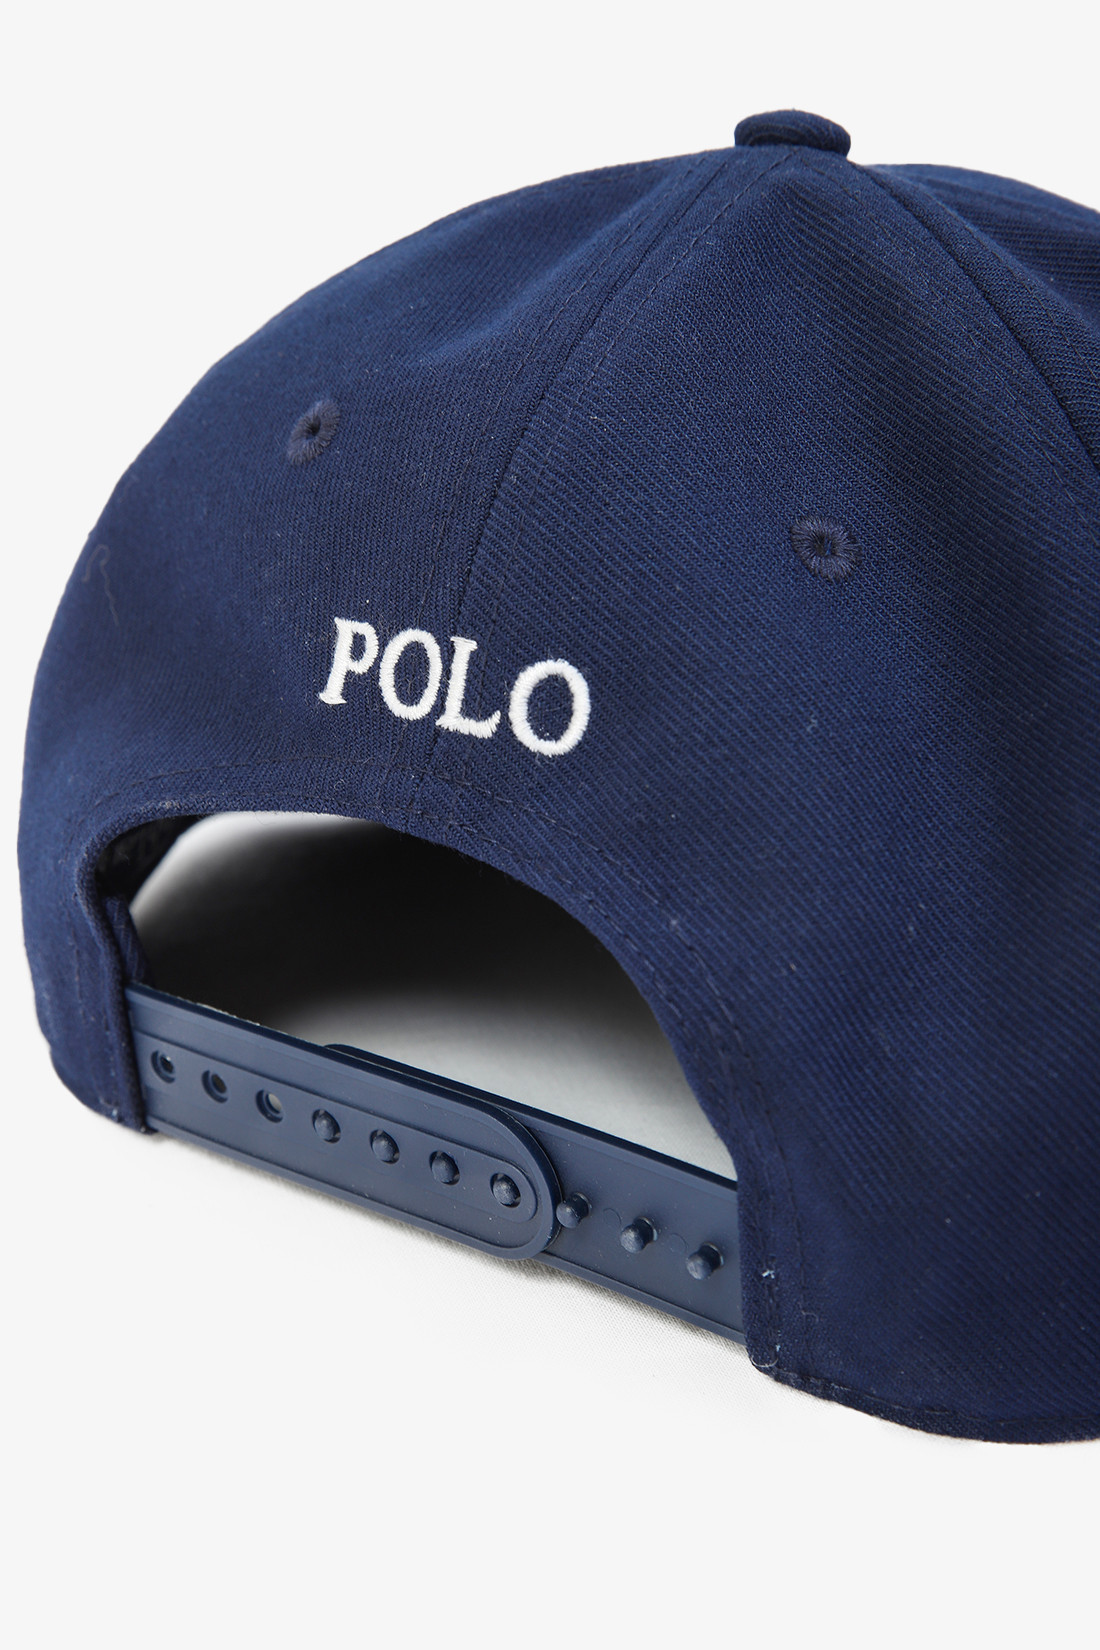 Polo ralph lauren Polo crown ball twill flat cap Newport navy - ... | EN